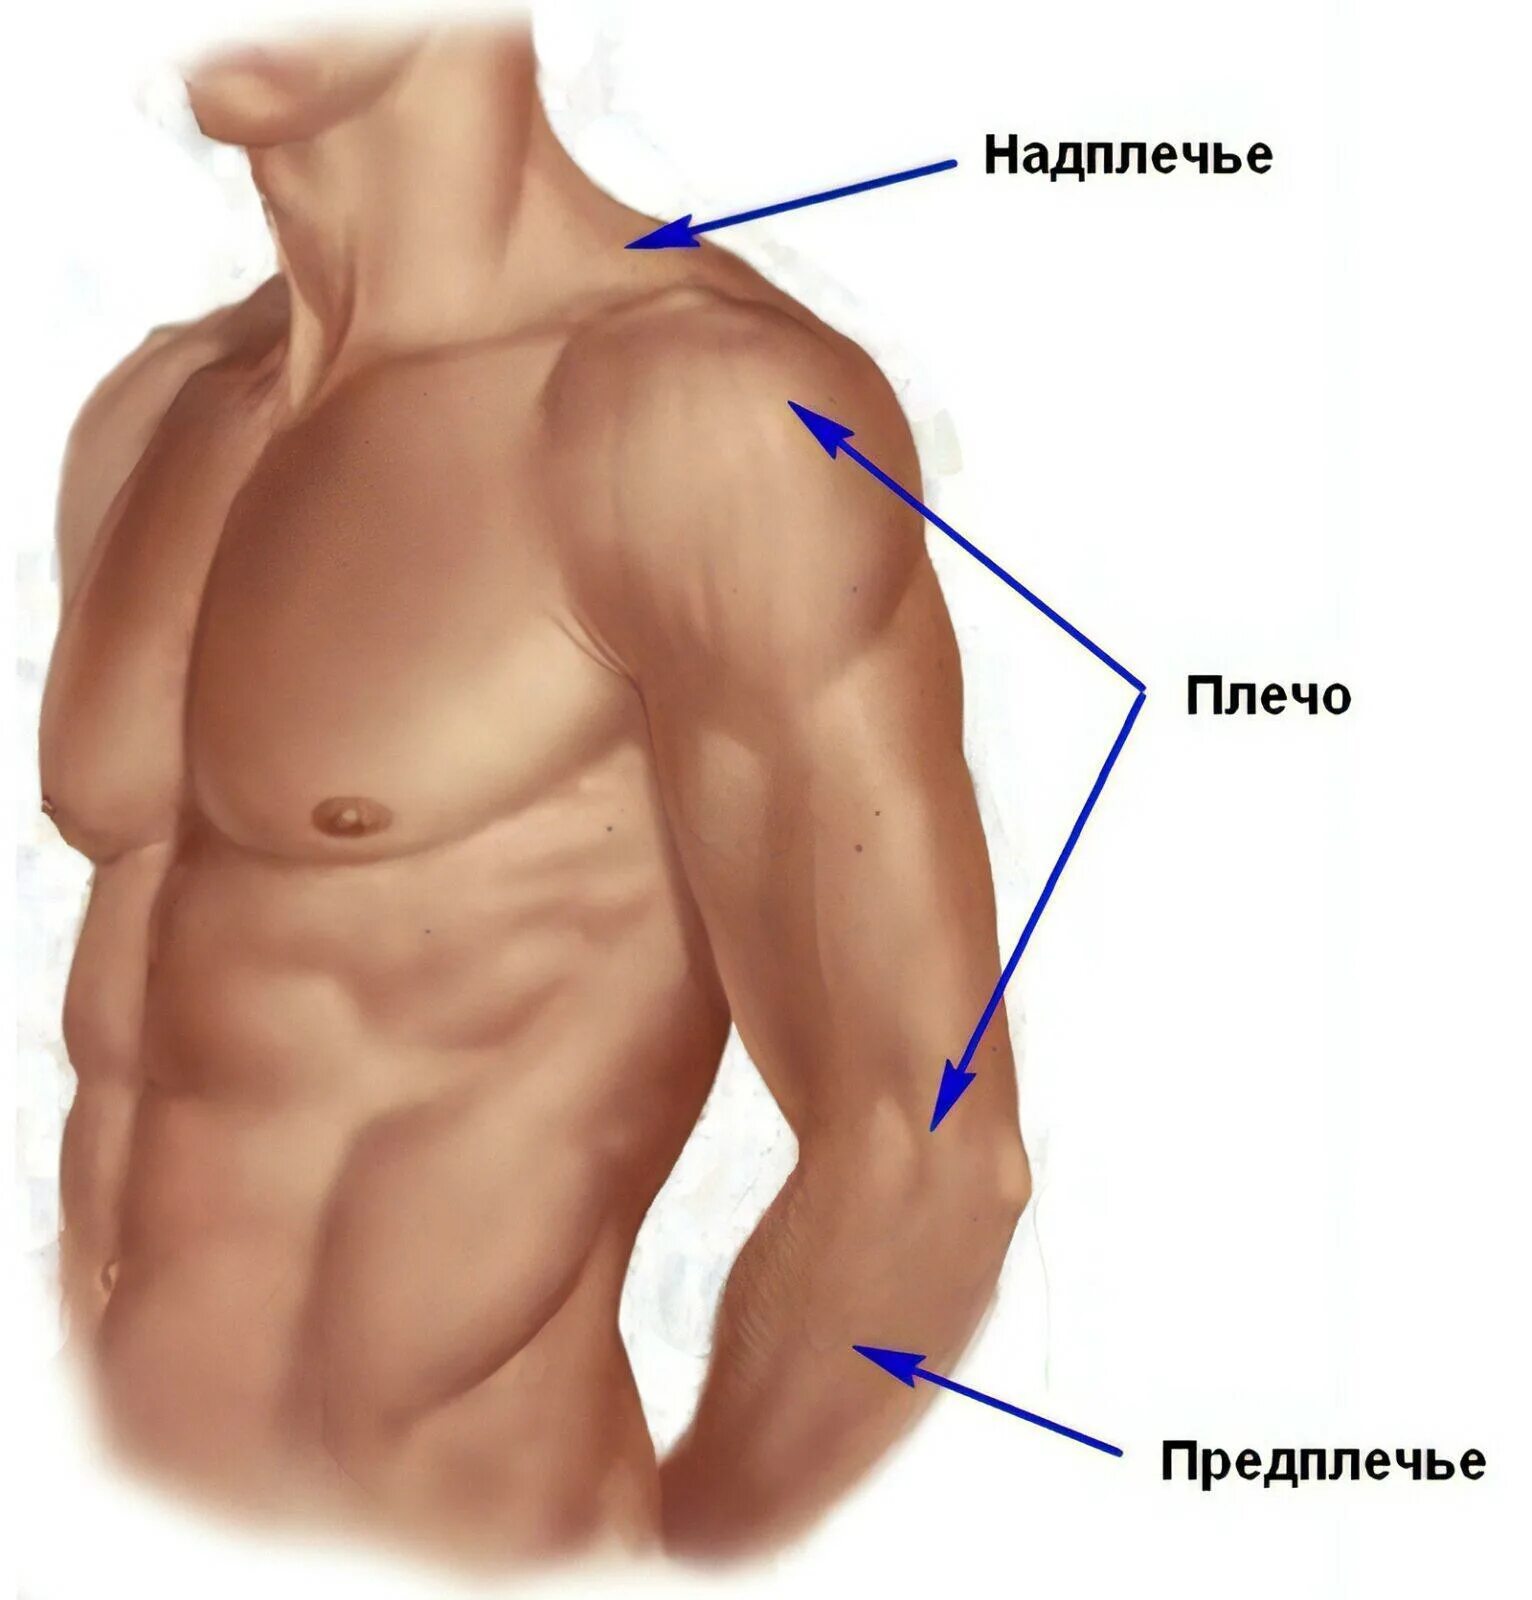 Анатомия плечо и предплечье. Где плечо а где предплечье у человека. Анатомия предплечья человека. Части руки человека названия.